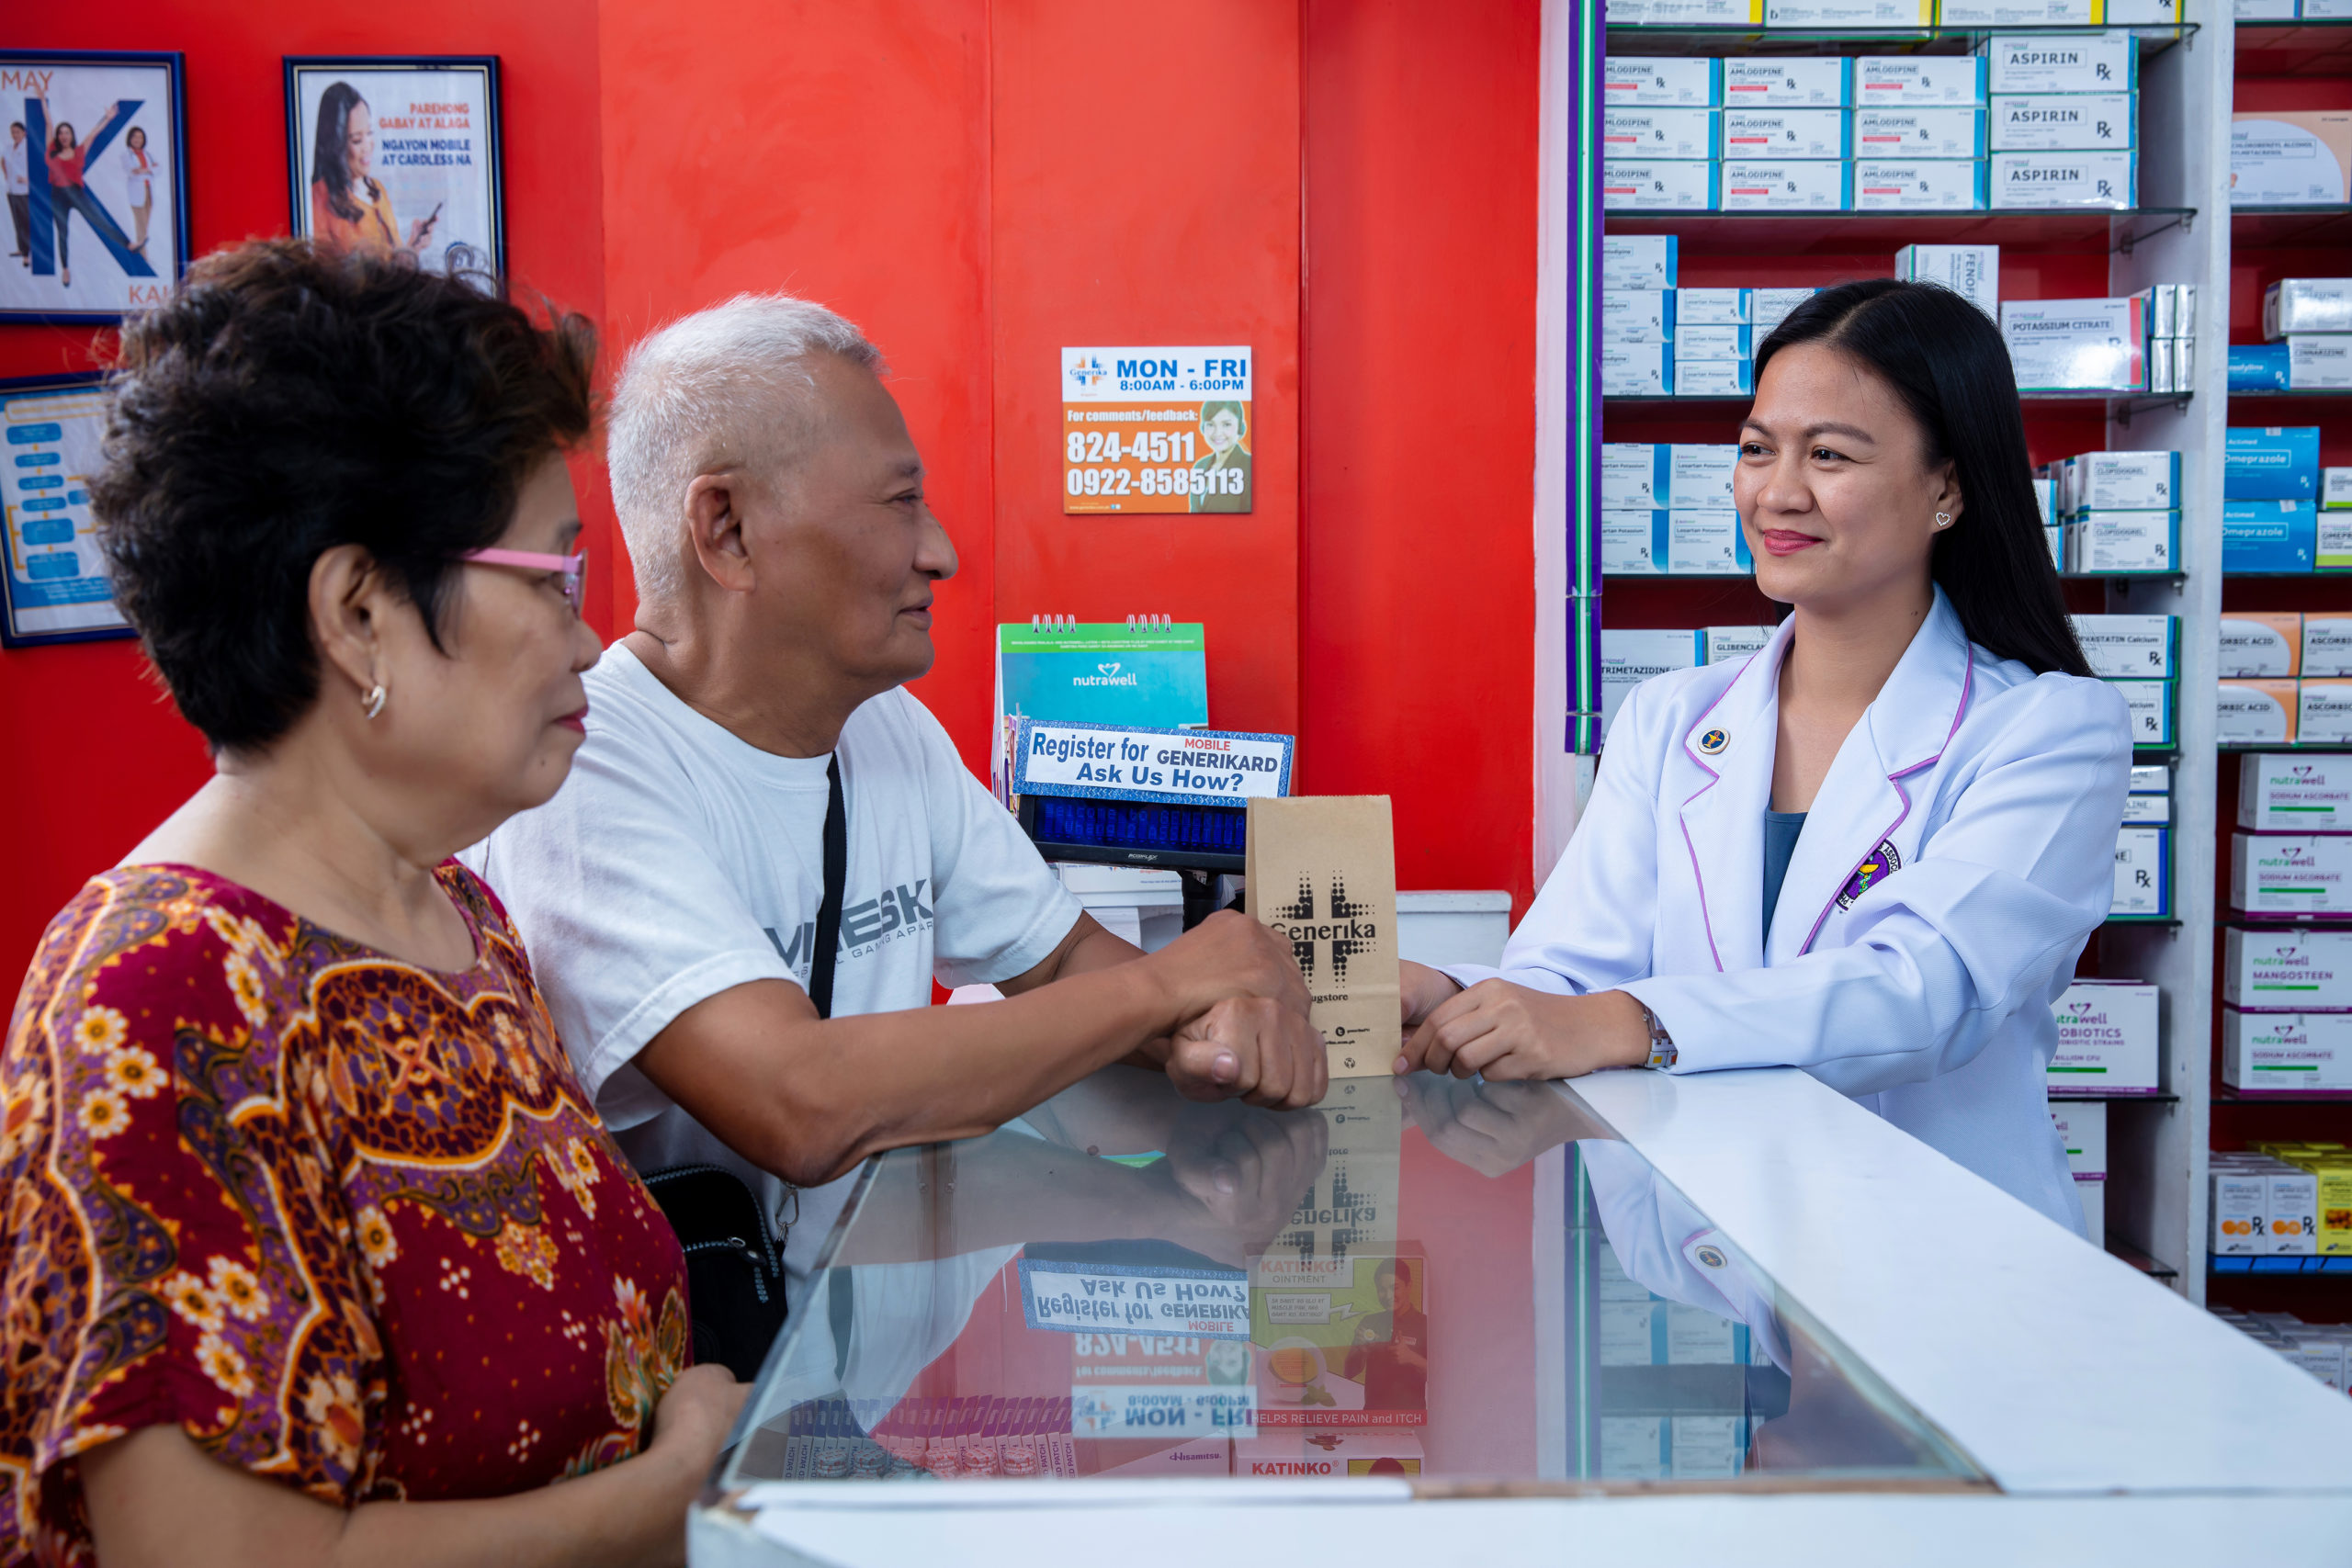 phramacist pharmacy drugstore elderly medicine inquirer